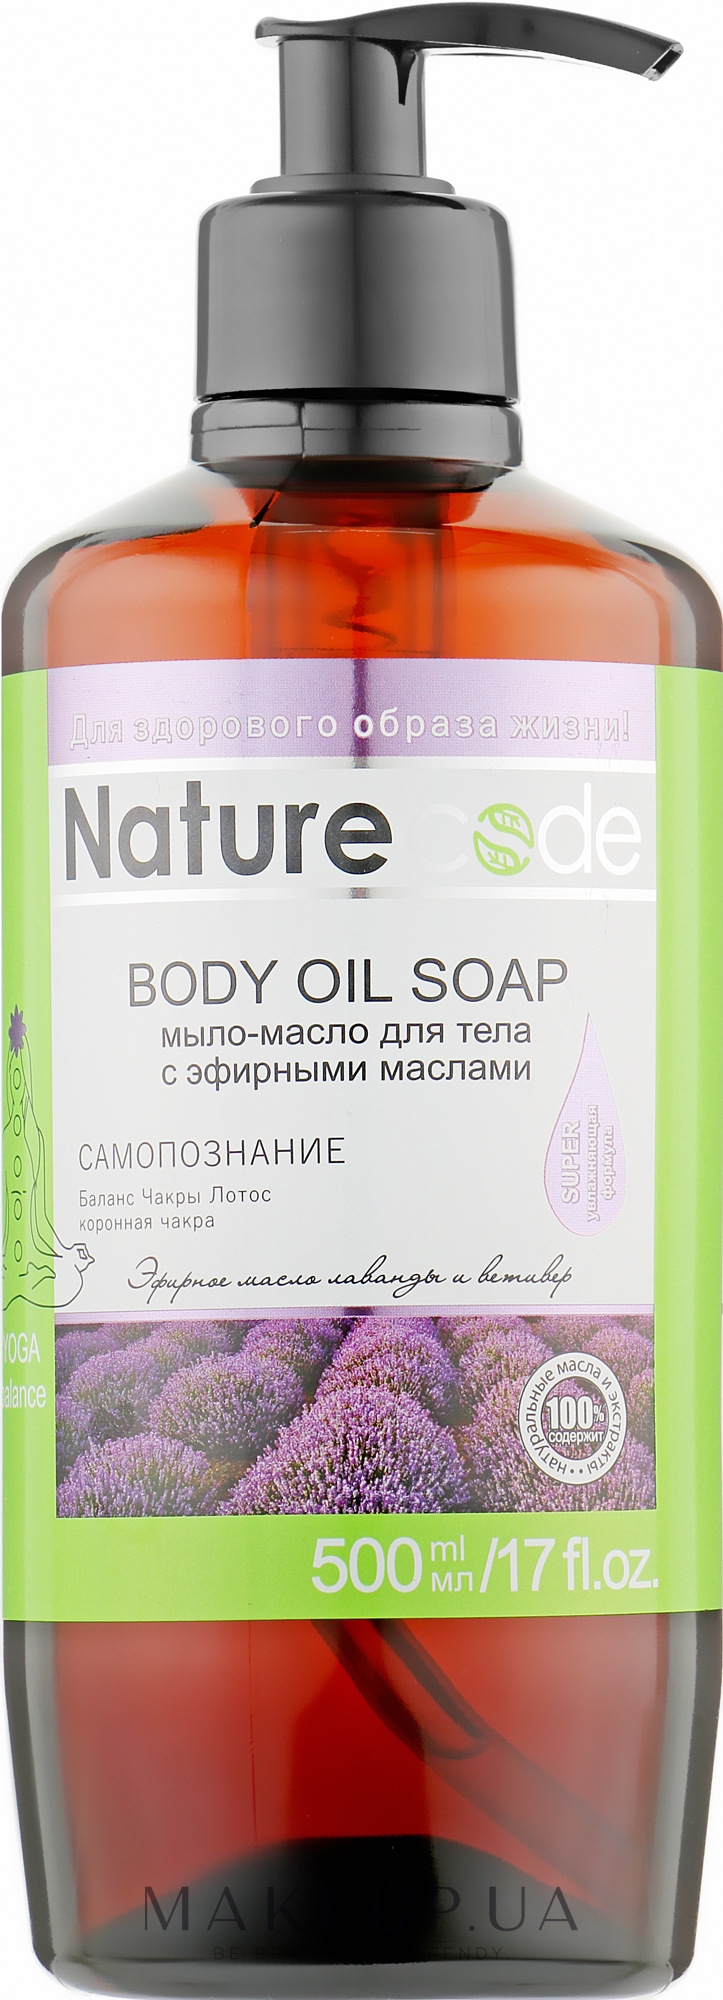 Мыло-масло для тела "Самопознание" - Nature Code Body Oil Soap — фото 500ml